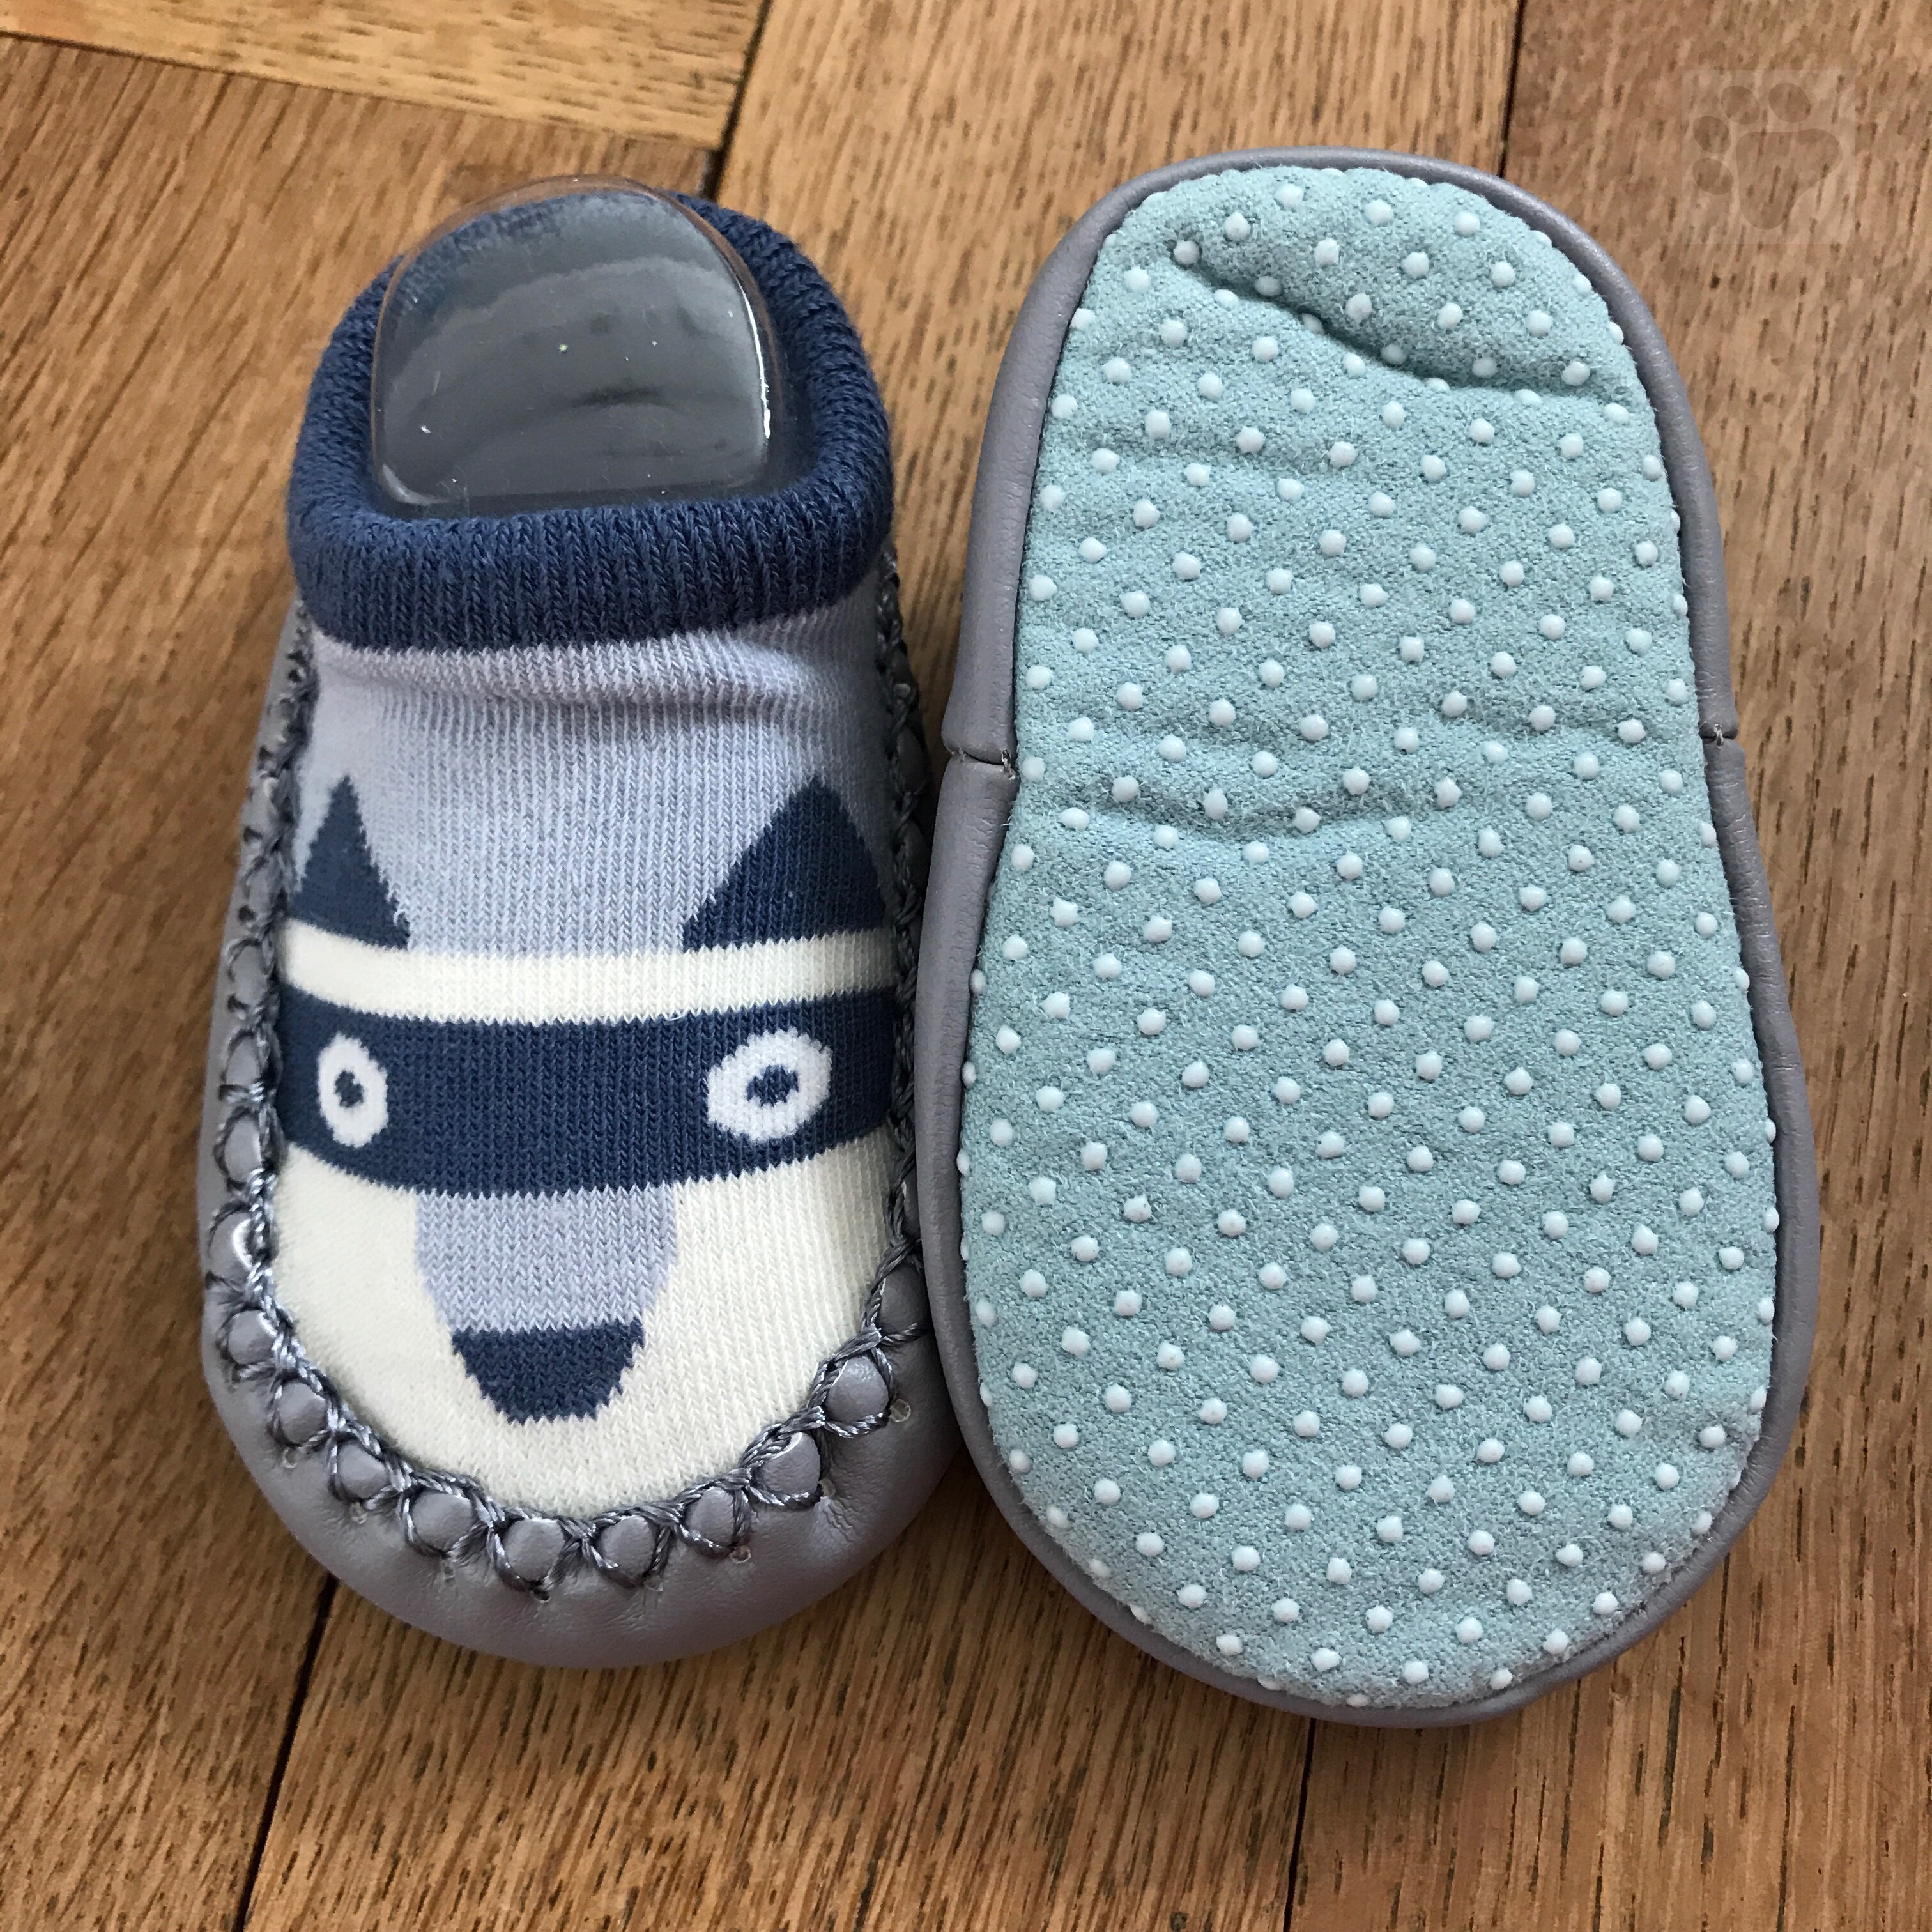 Süsse Baby-/Kleinkinder Finken/Schuhe in der Grösse 11cm "blauer Fuchs"